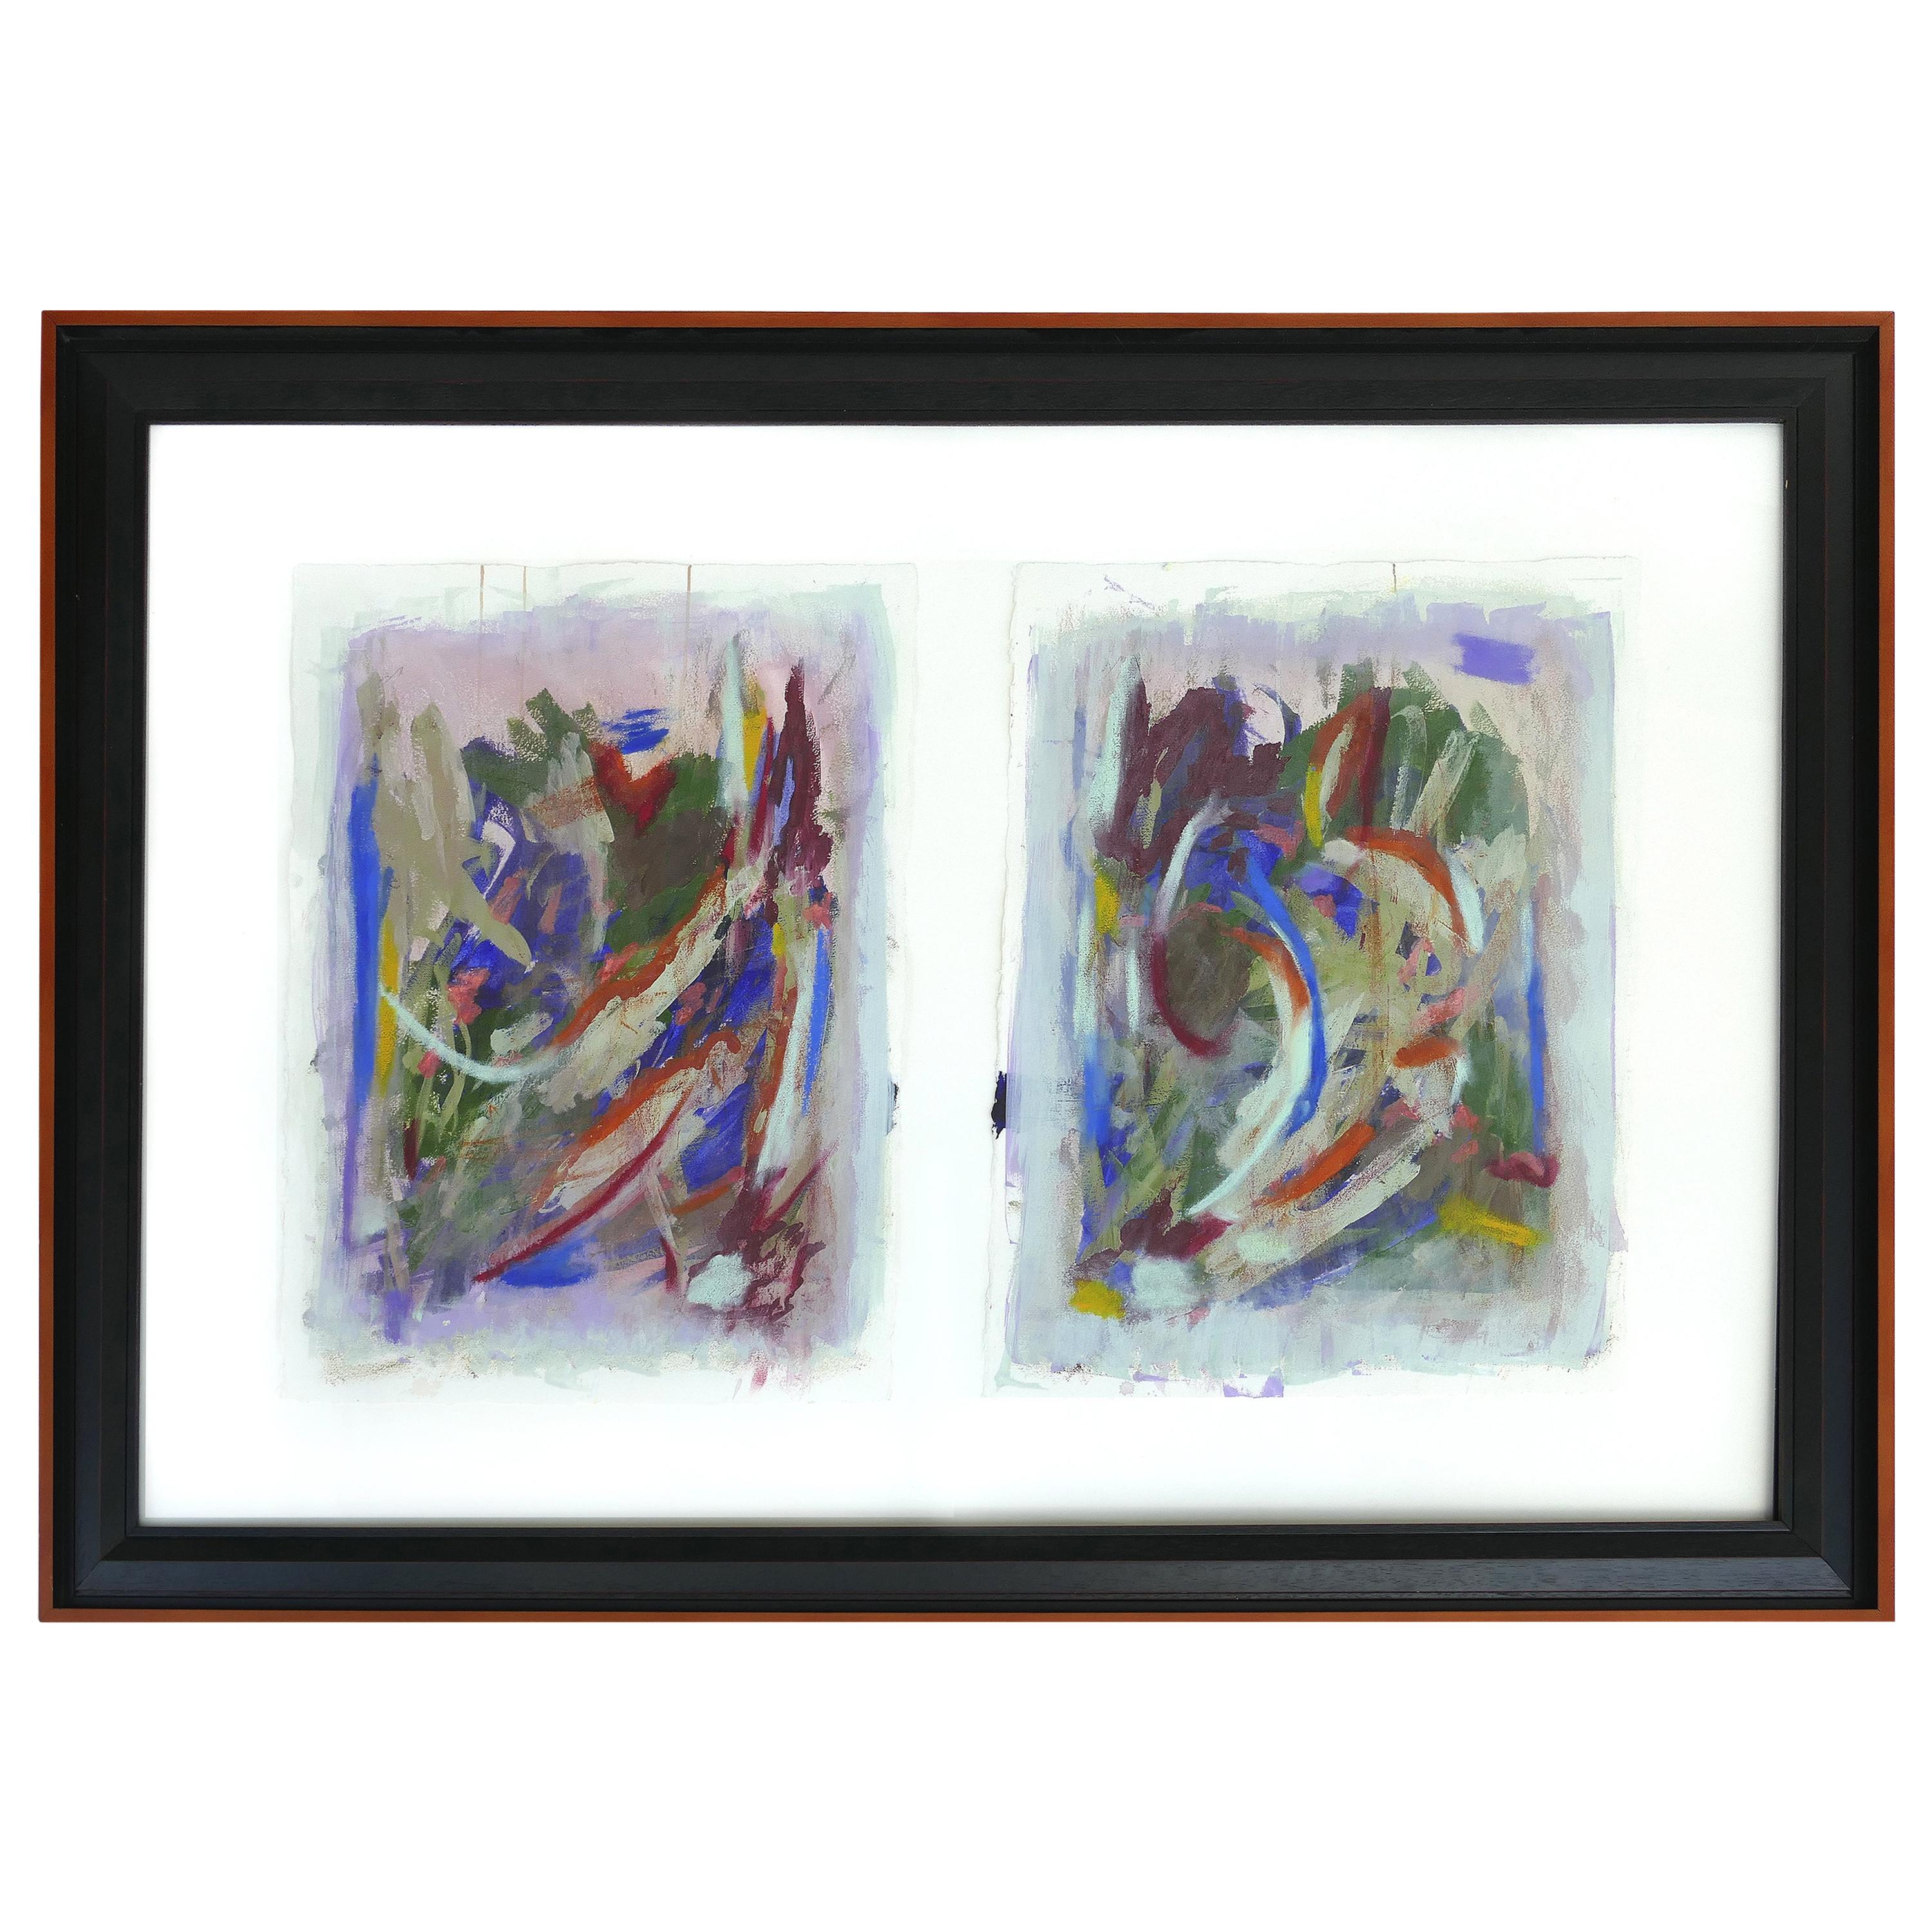 Grande peinture abstraite vintage en diptyque, signée, 2014, encadrée sous verre